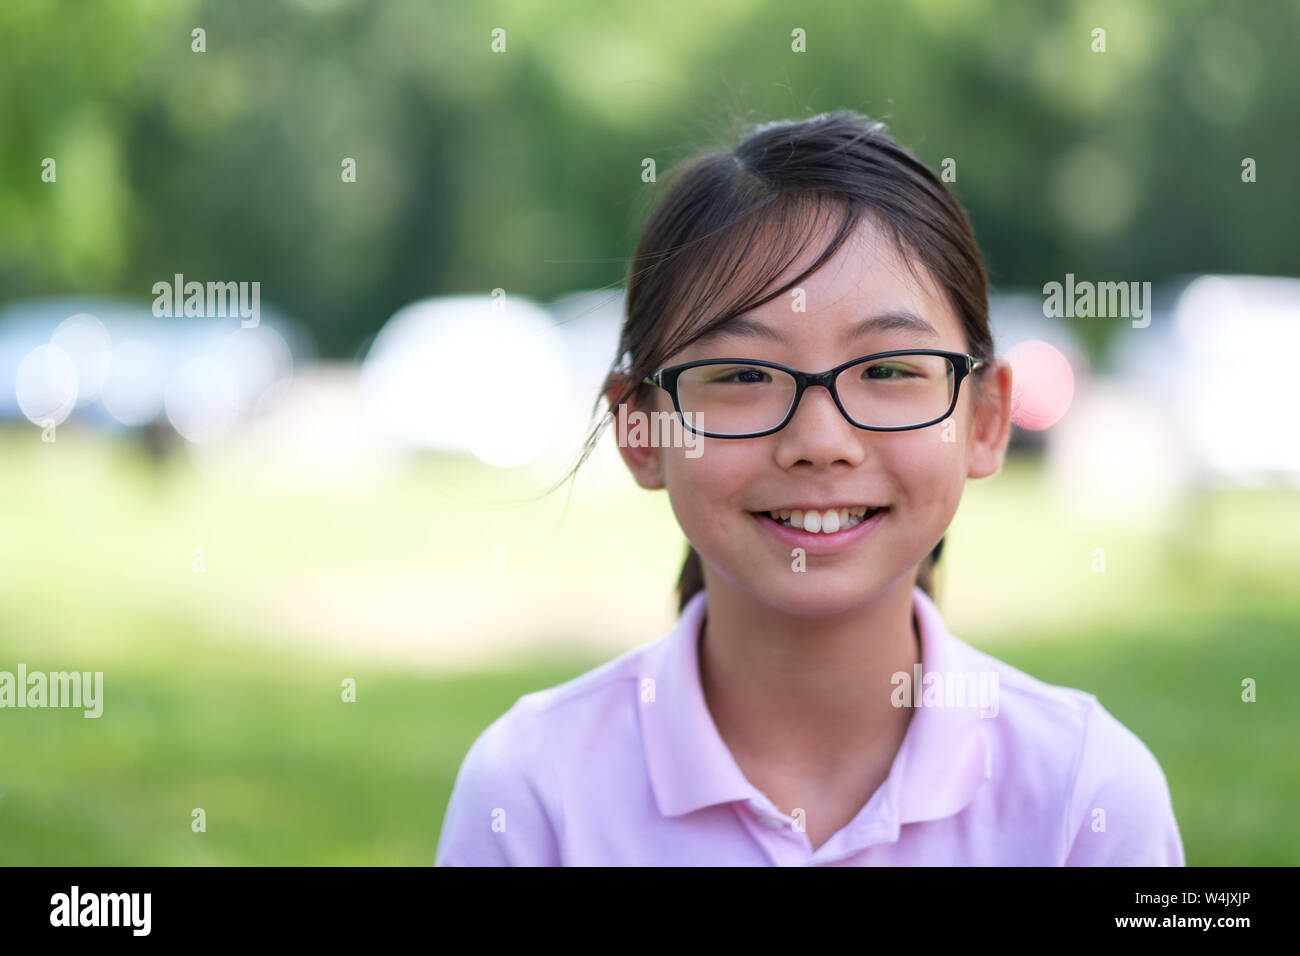 Asiatische Mädchen Porträt lächelnd im Park Stockfoto